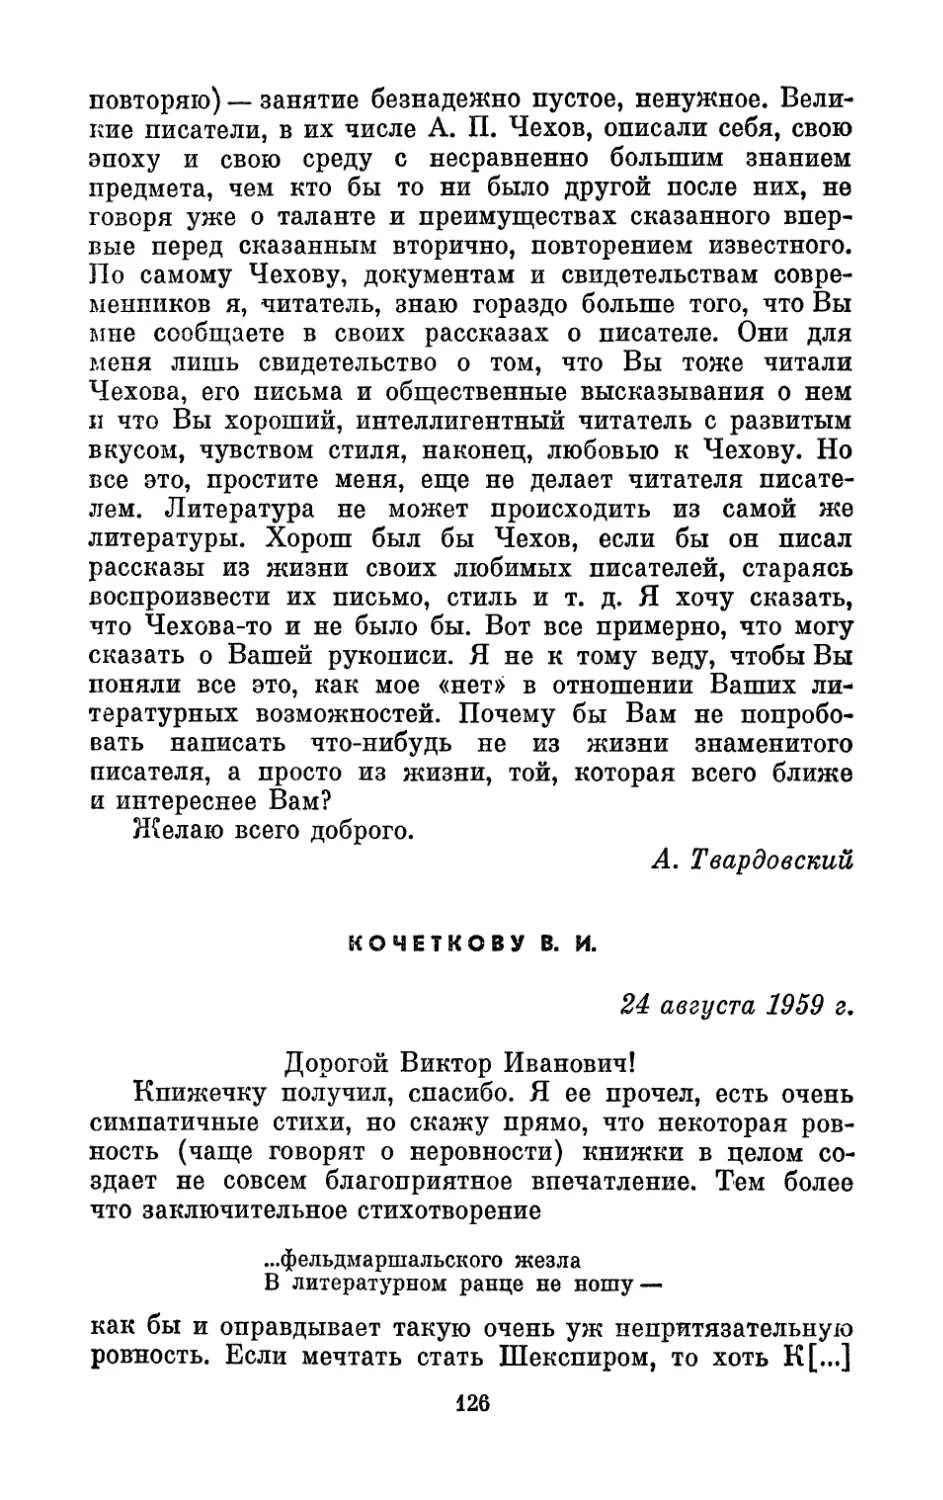 Кочеткову В. И., 24 августа 1959 г.